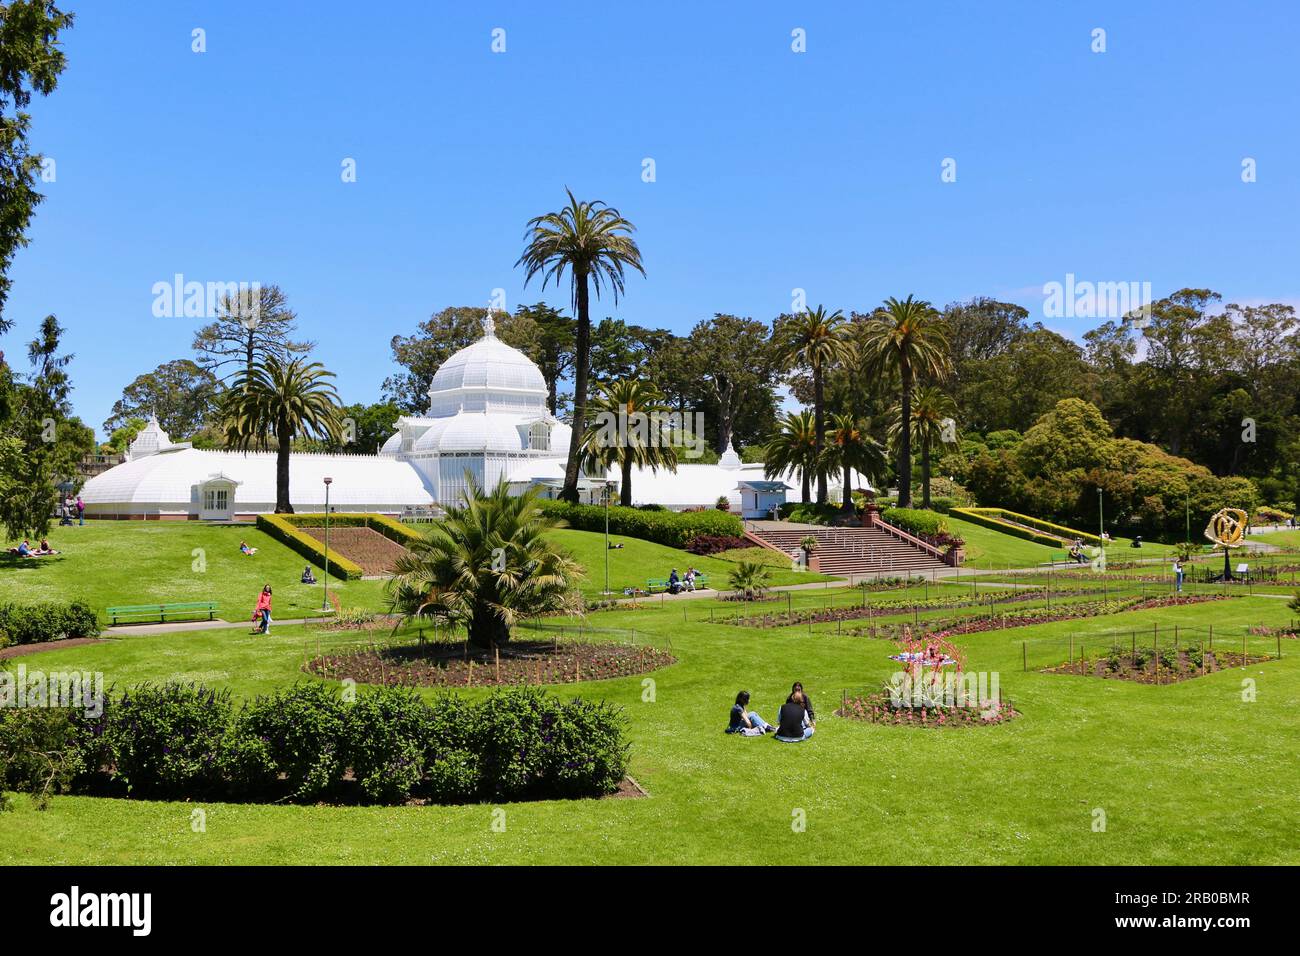 Historic Conservatory of Flowers serre victorienne construite en 1879 dans un fort ensoleillement Golden Gate Park San Francisco California USA Banque D'Images